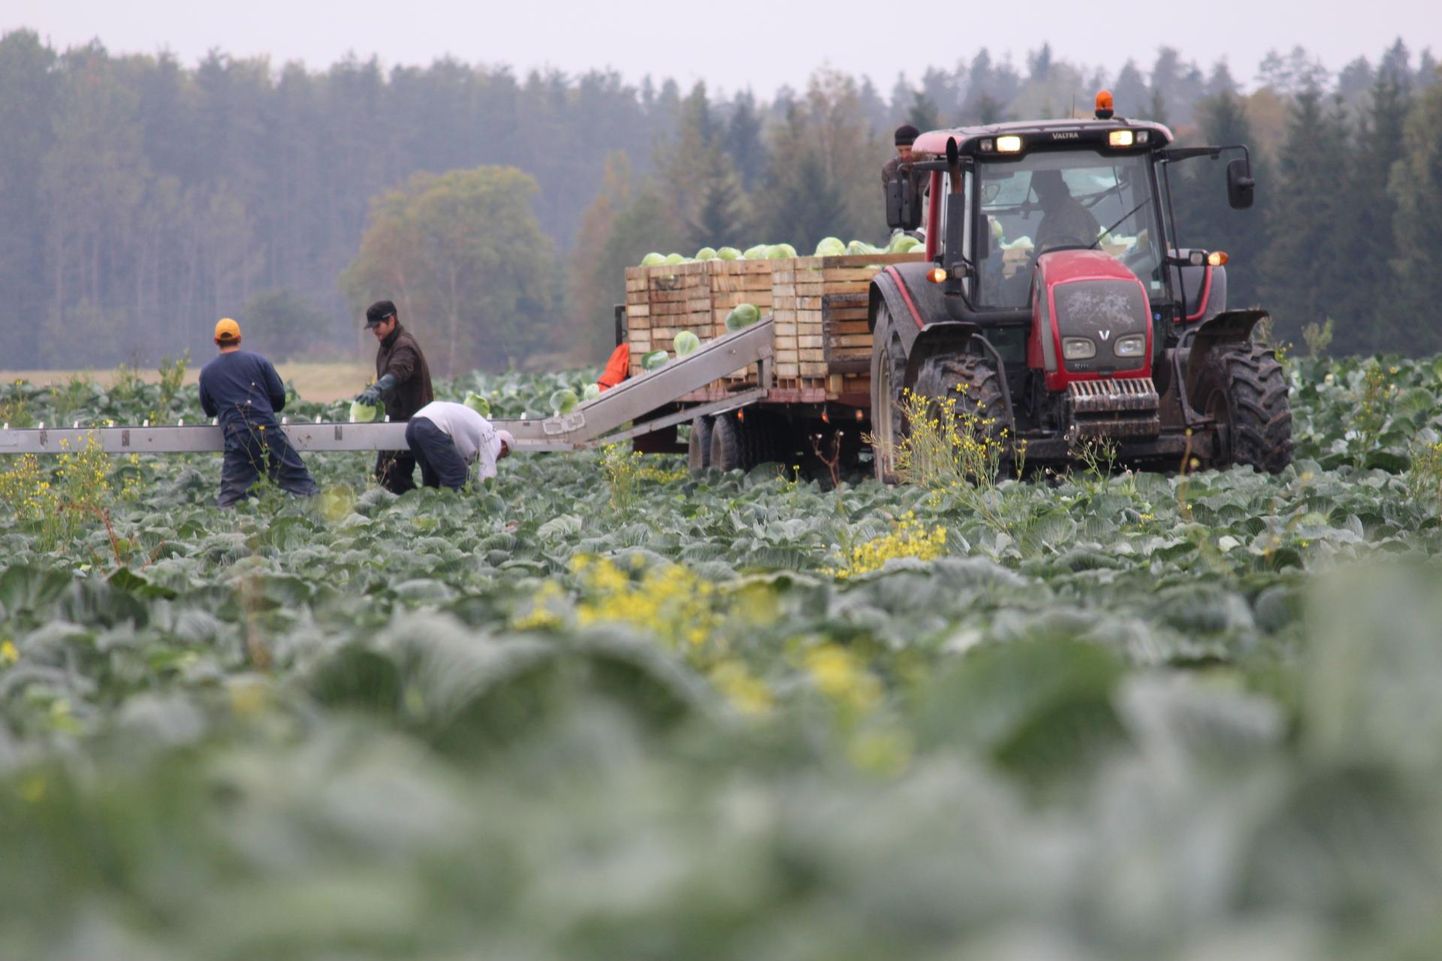 Viimastel aastatel on Eestimaa köögiviljapõldudel ametis nii kohalikku päritolu kapsakorjajad kui ka kaugemalt, eelkõige Ukrainast, pärit tööjõud.